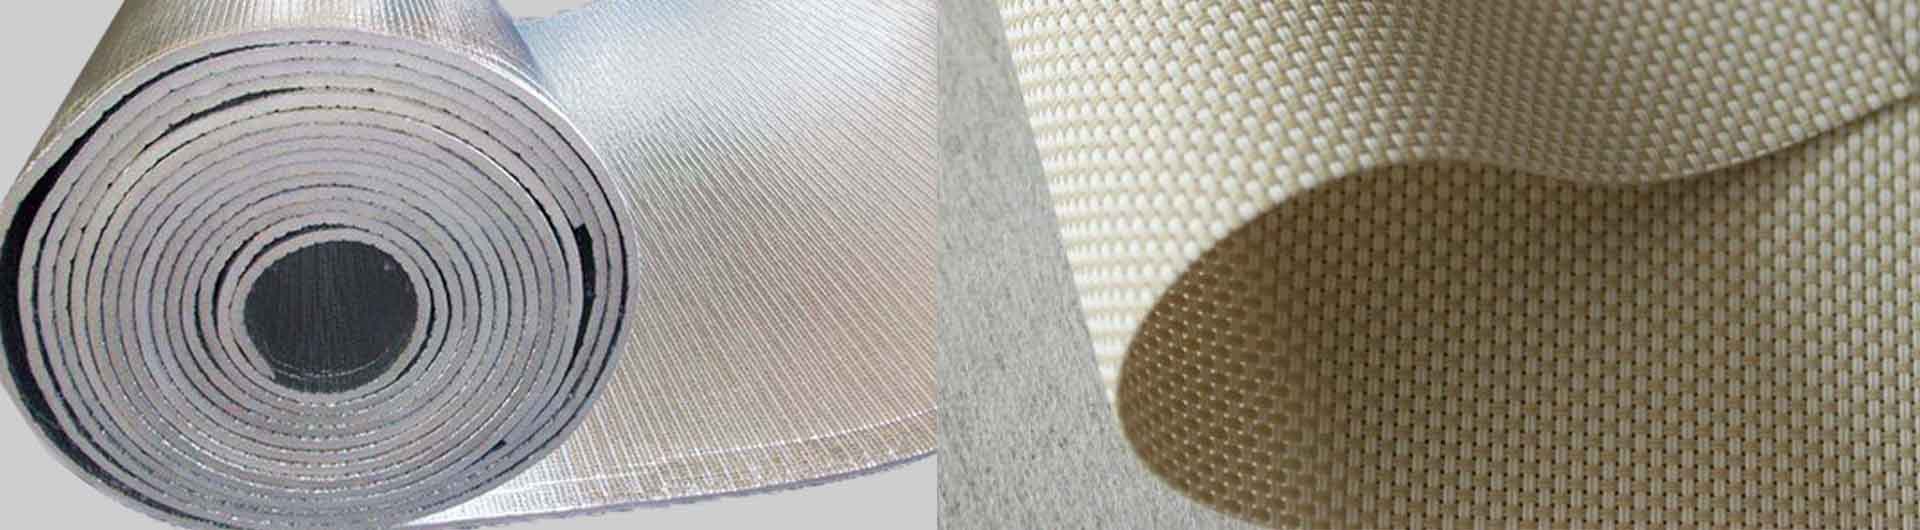 Insulation Materials Dziviriro Materials